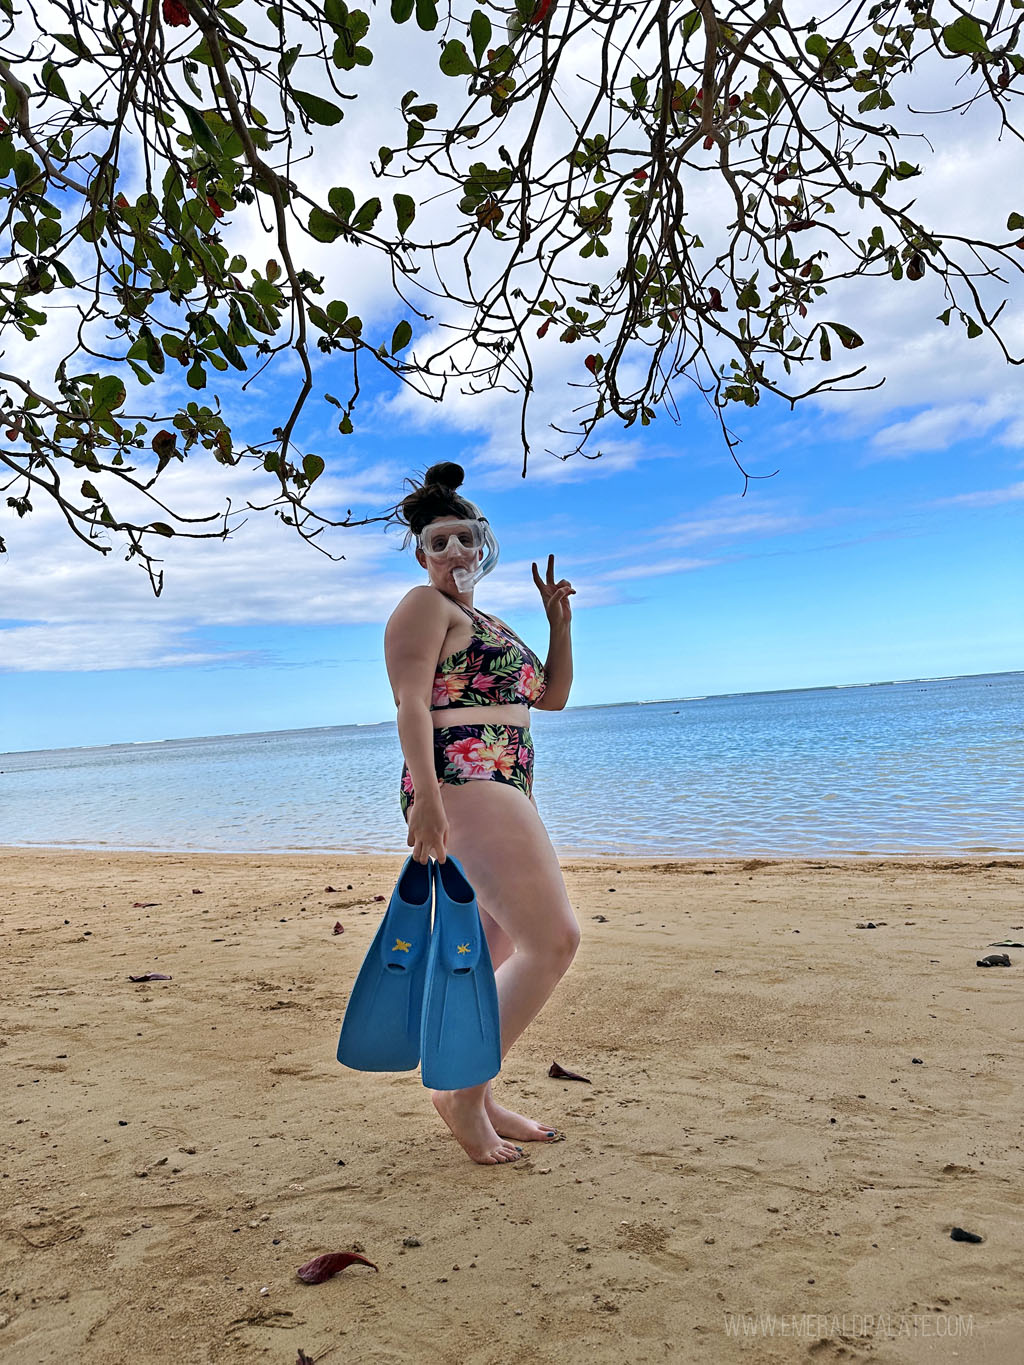 woman on a beach in snorkel gear in Hawaii